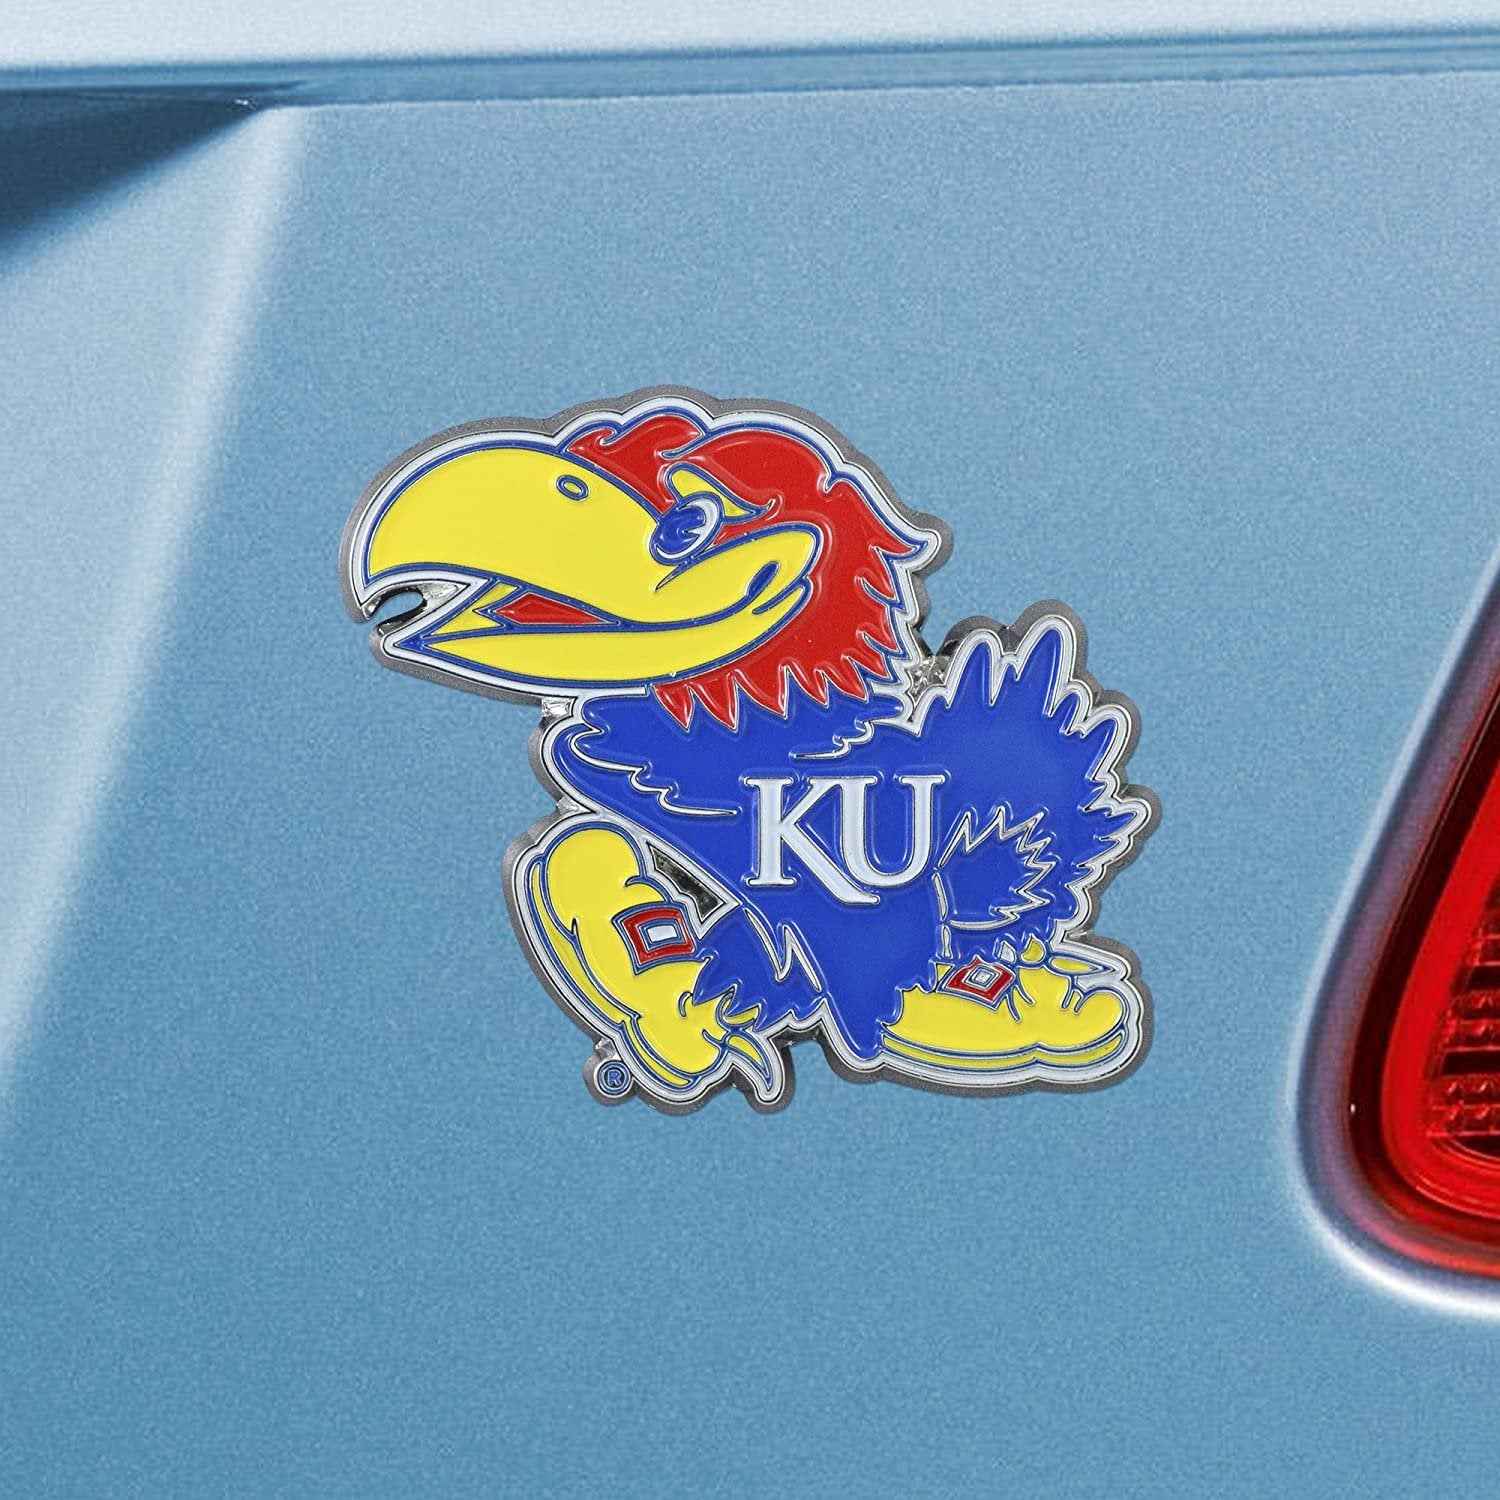 University of Kansas Jayhawks Premium Solid Metal Raised Auto Emblem, Team Color, Shape Cut, Adhesive Backing